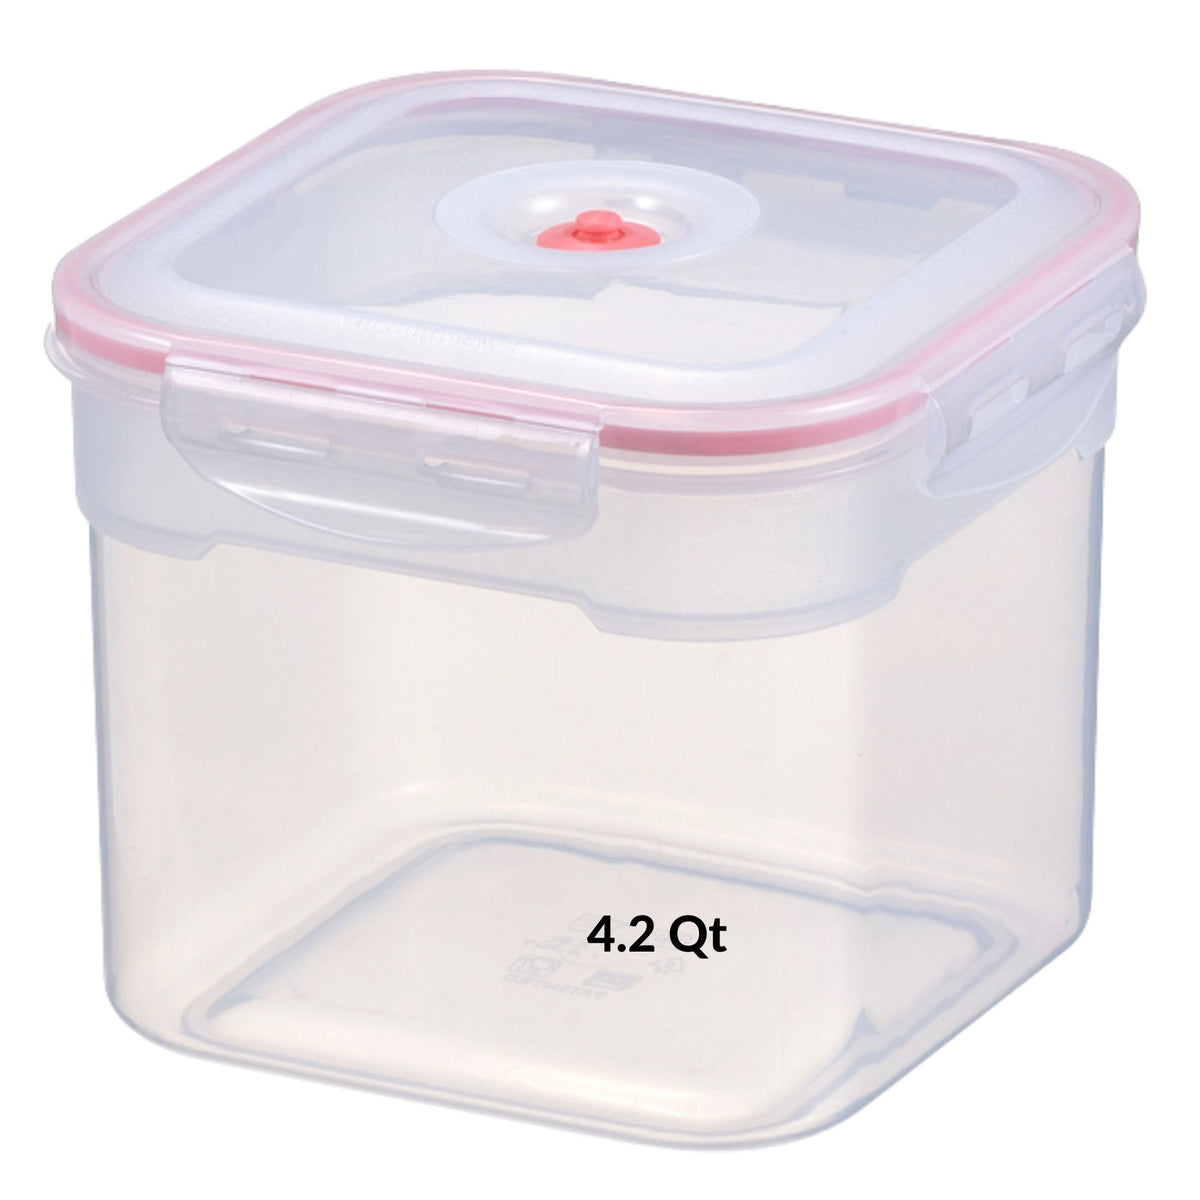 Square Vacuum Seal Container | 4.0 Liter / 4.2 Qt (Coral)